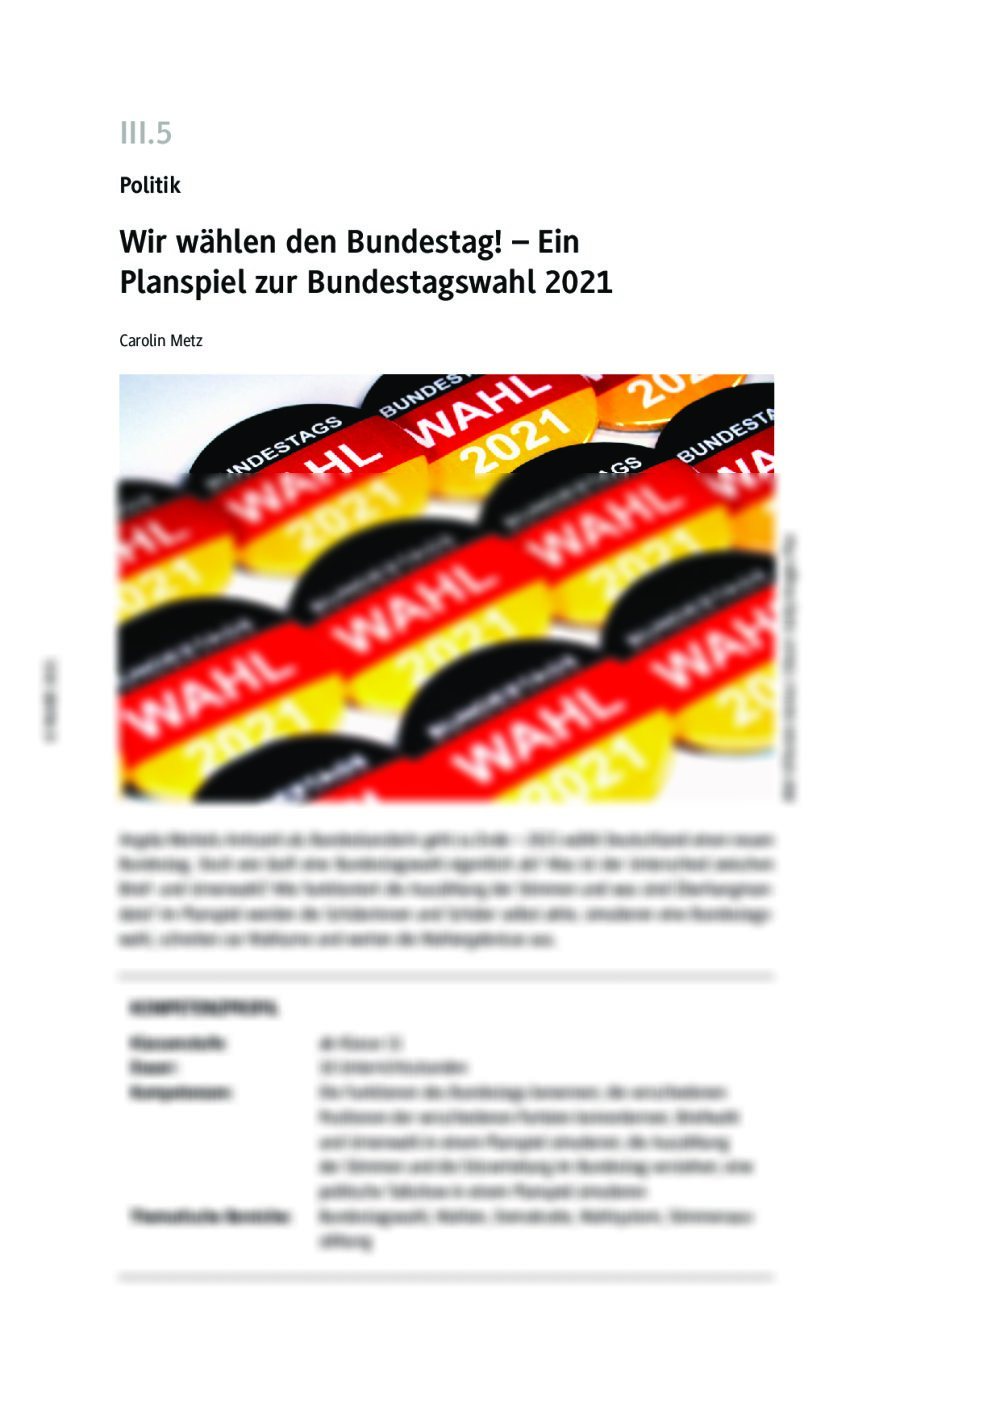 Wir wählen den Bundestag! - Seite 1